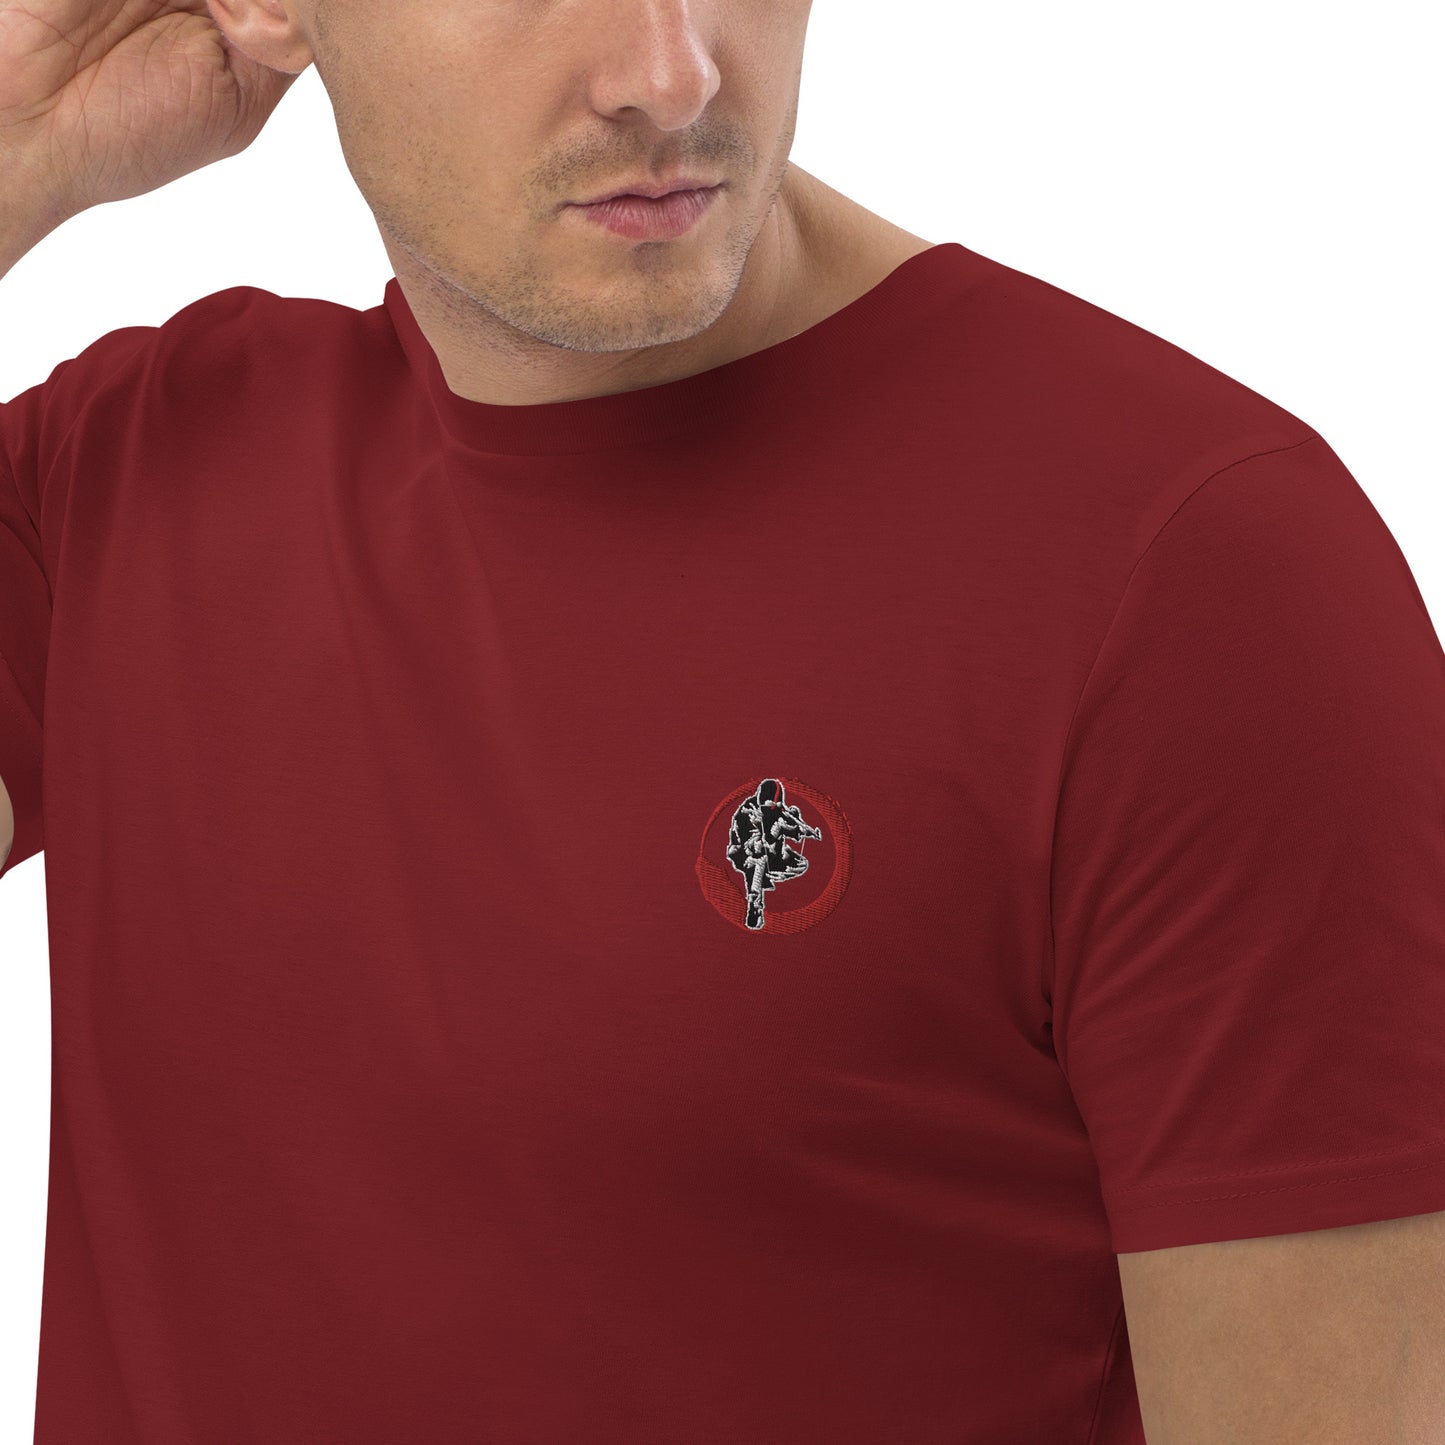 T-shirt unisexe en coton bio Ribellu Contour Rouge - Ochju Ochju Burgundy / S Ochju T-shirt unisexe en coton bio Ribellu Contour Rouge